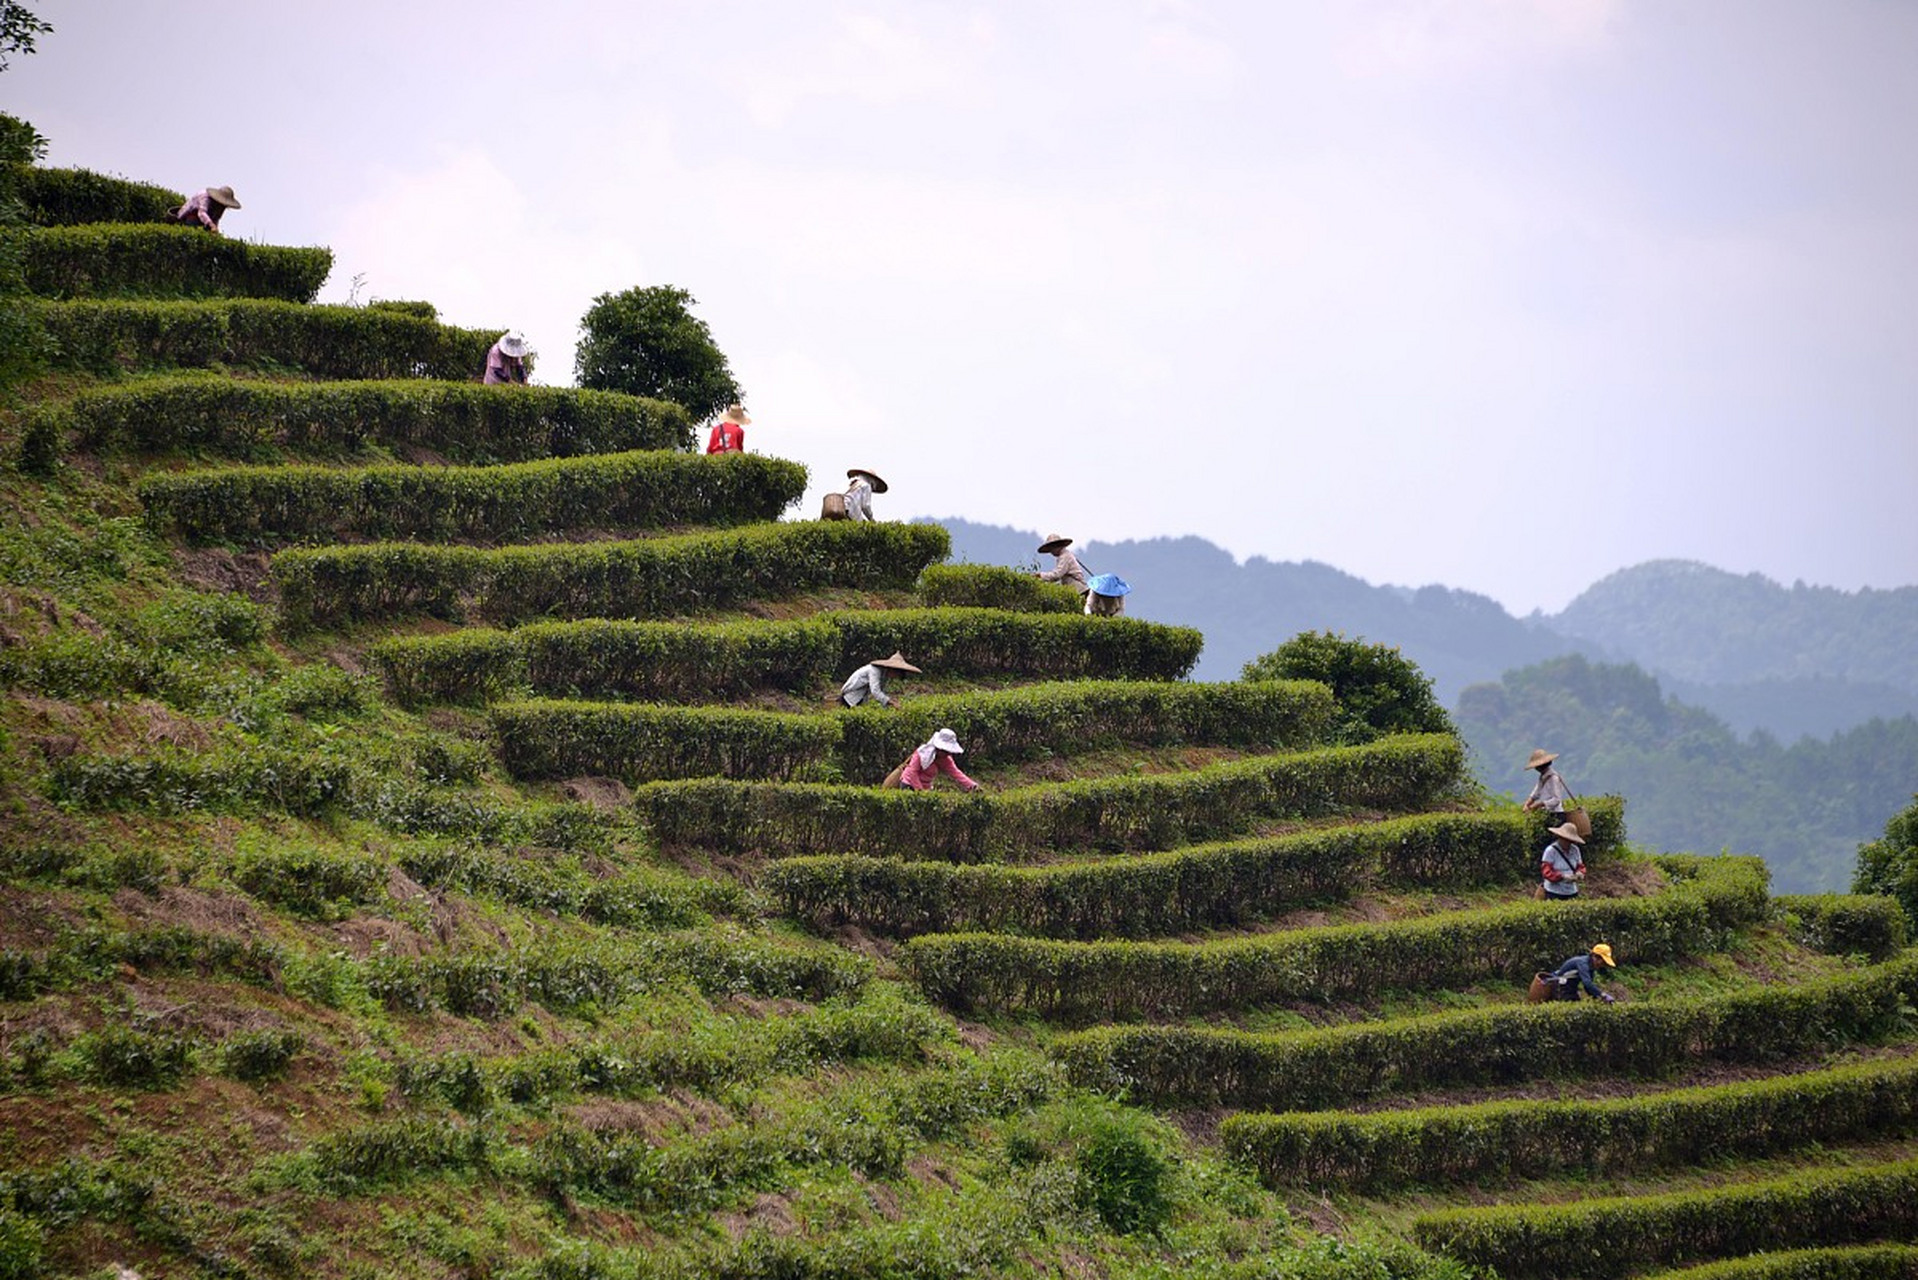 梅州雁南飞茶田景区位于广东省梅州市梅县区,是一个集茶叶生产,加工